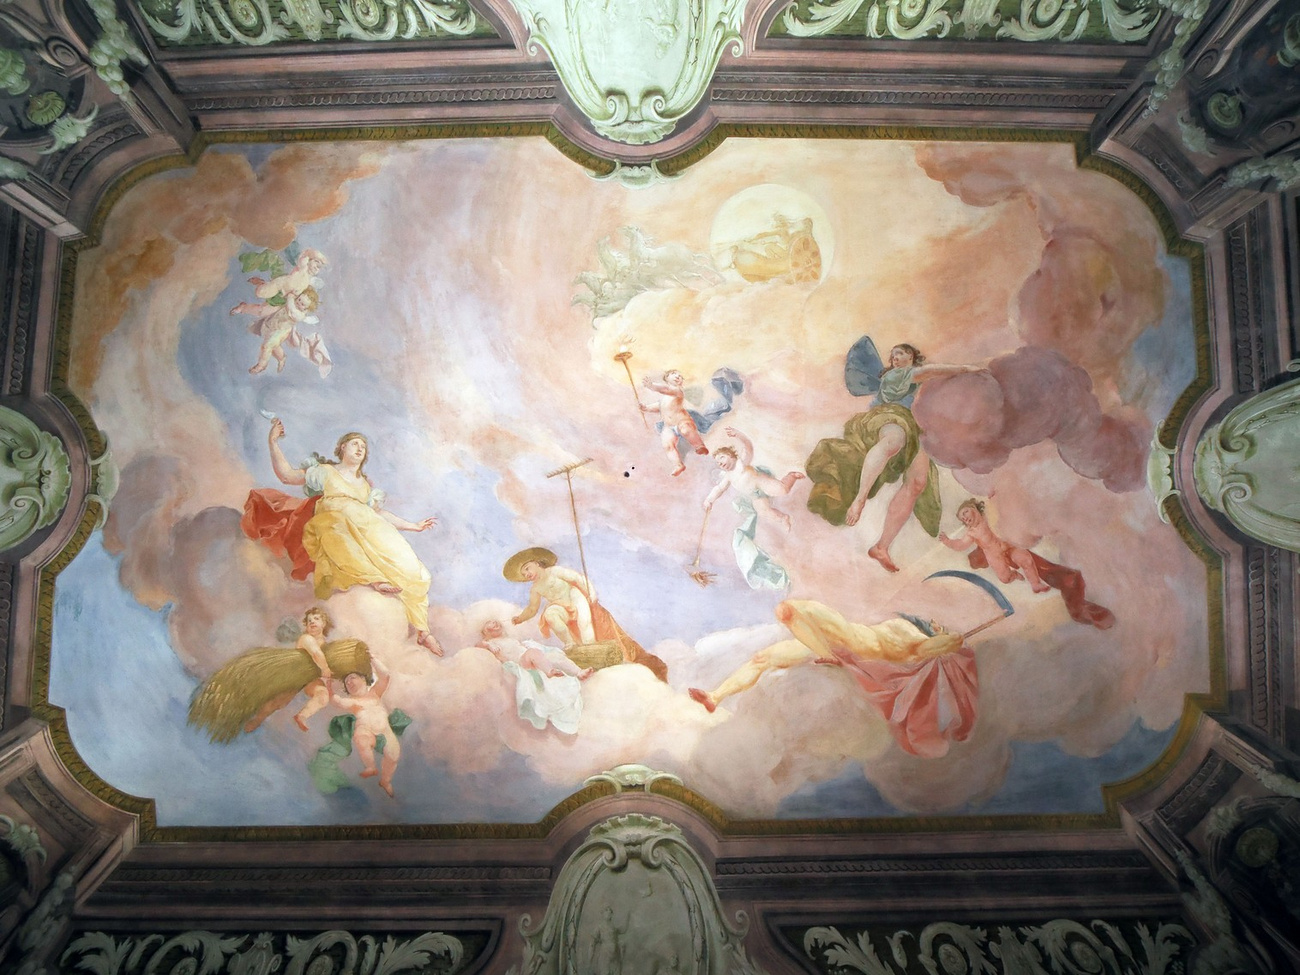 Biró-Giczey Ház - A díszterem mennyezeti freskója.